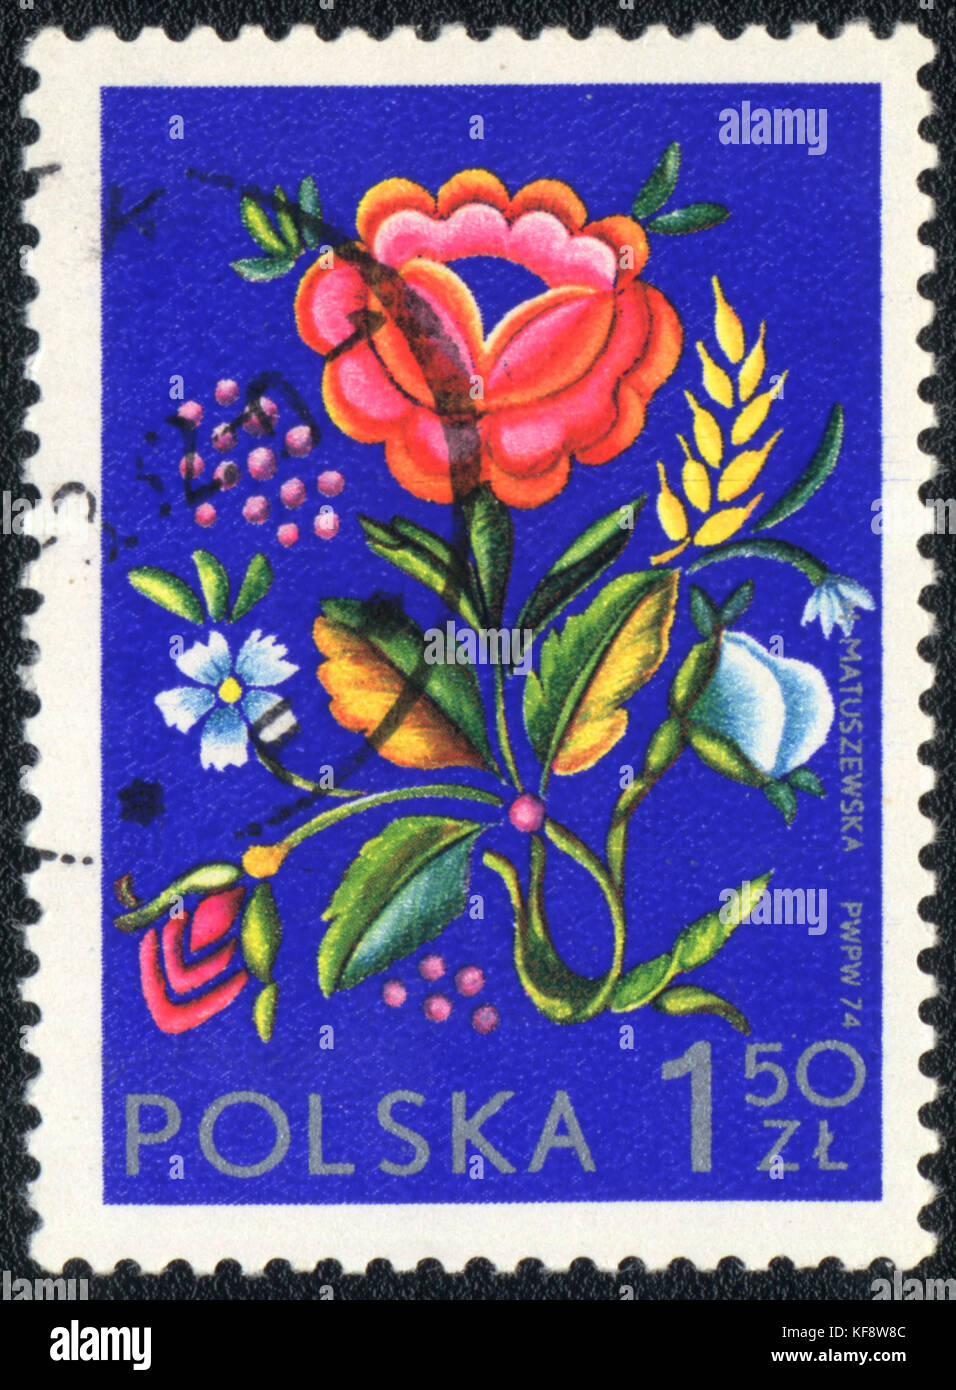 Eine Briefmarke in Polen gedruckt zeigt eine polnische Blumendekor, ca. 1974 Stockfoto